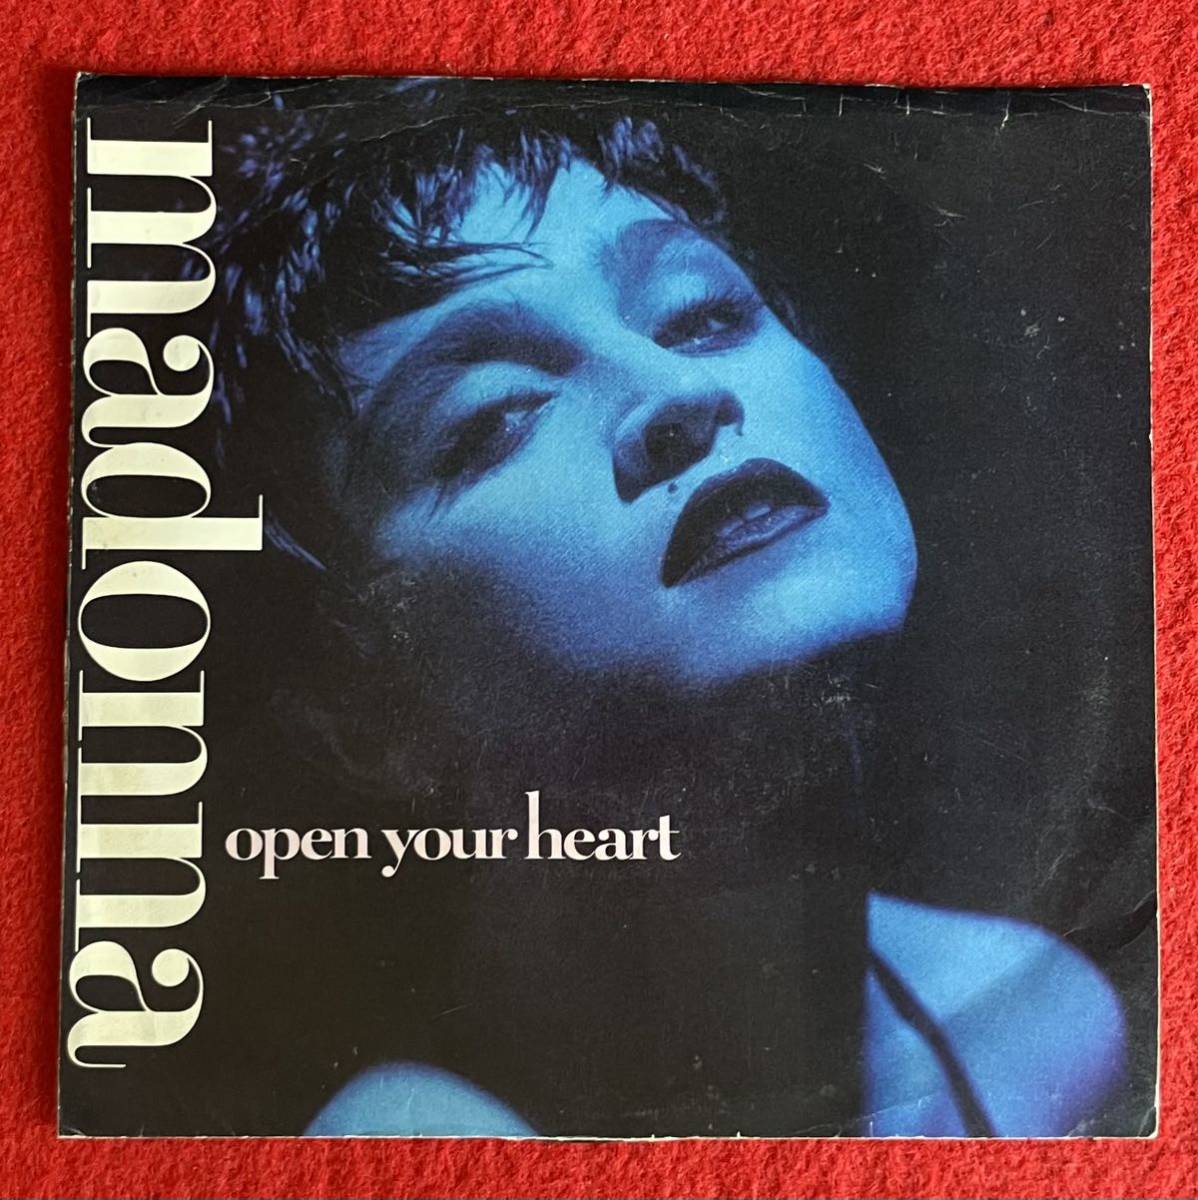 EP盤 Madonna / Open Your Heart US盤 オリジナル7インチ盤その他プロモーション盤 レア盤 人気レコード 多数出品。_画像1